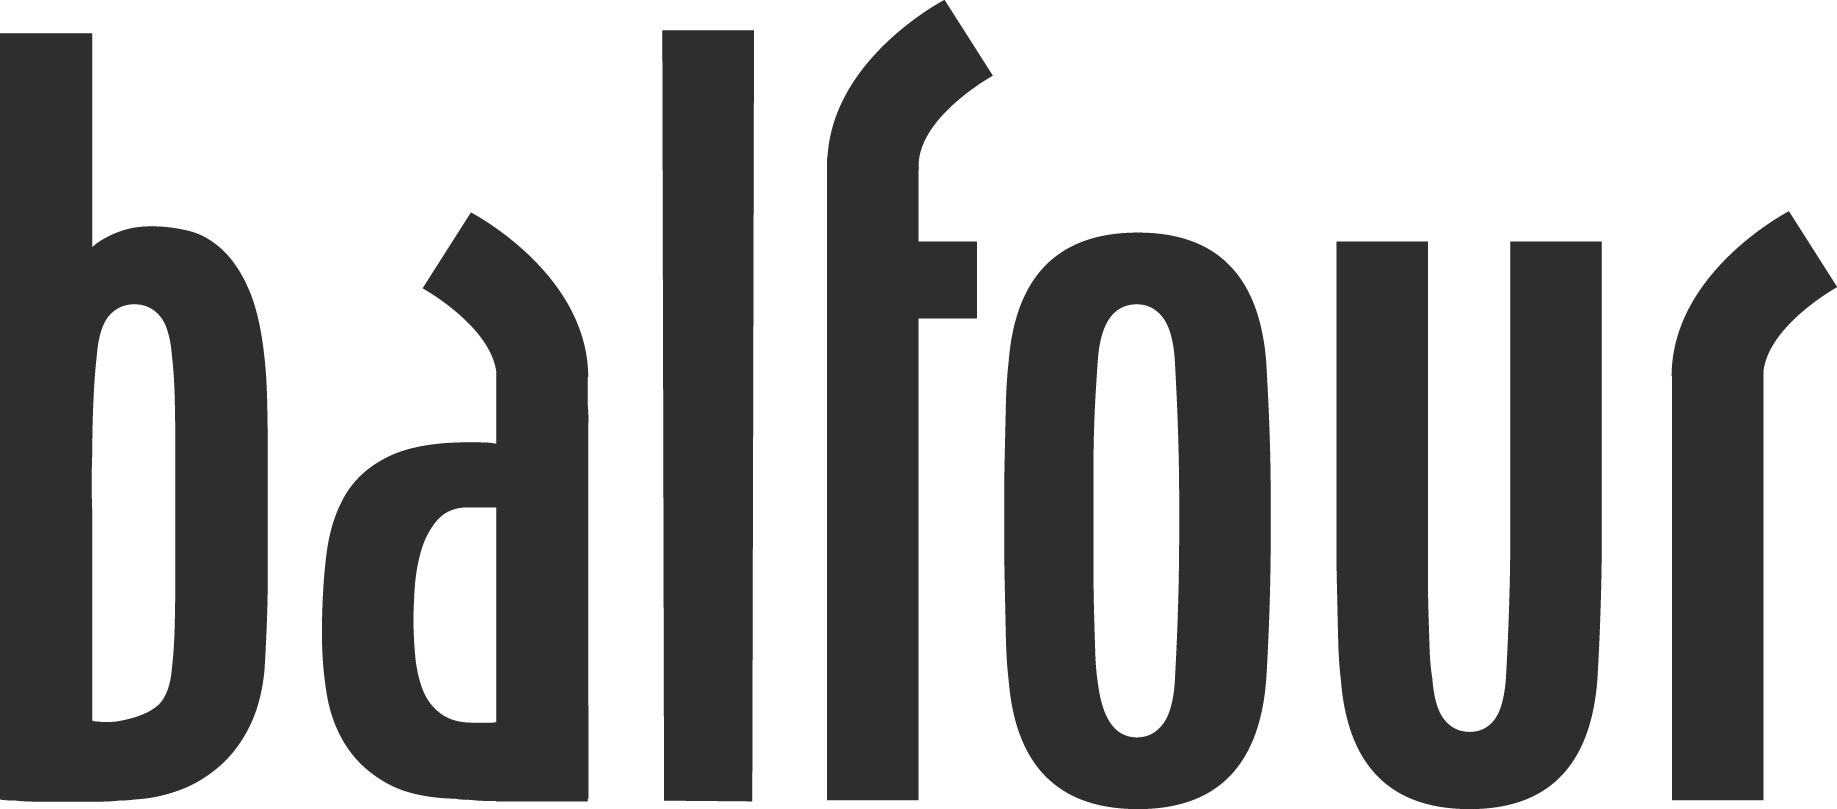 Balfour logo 